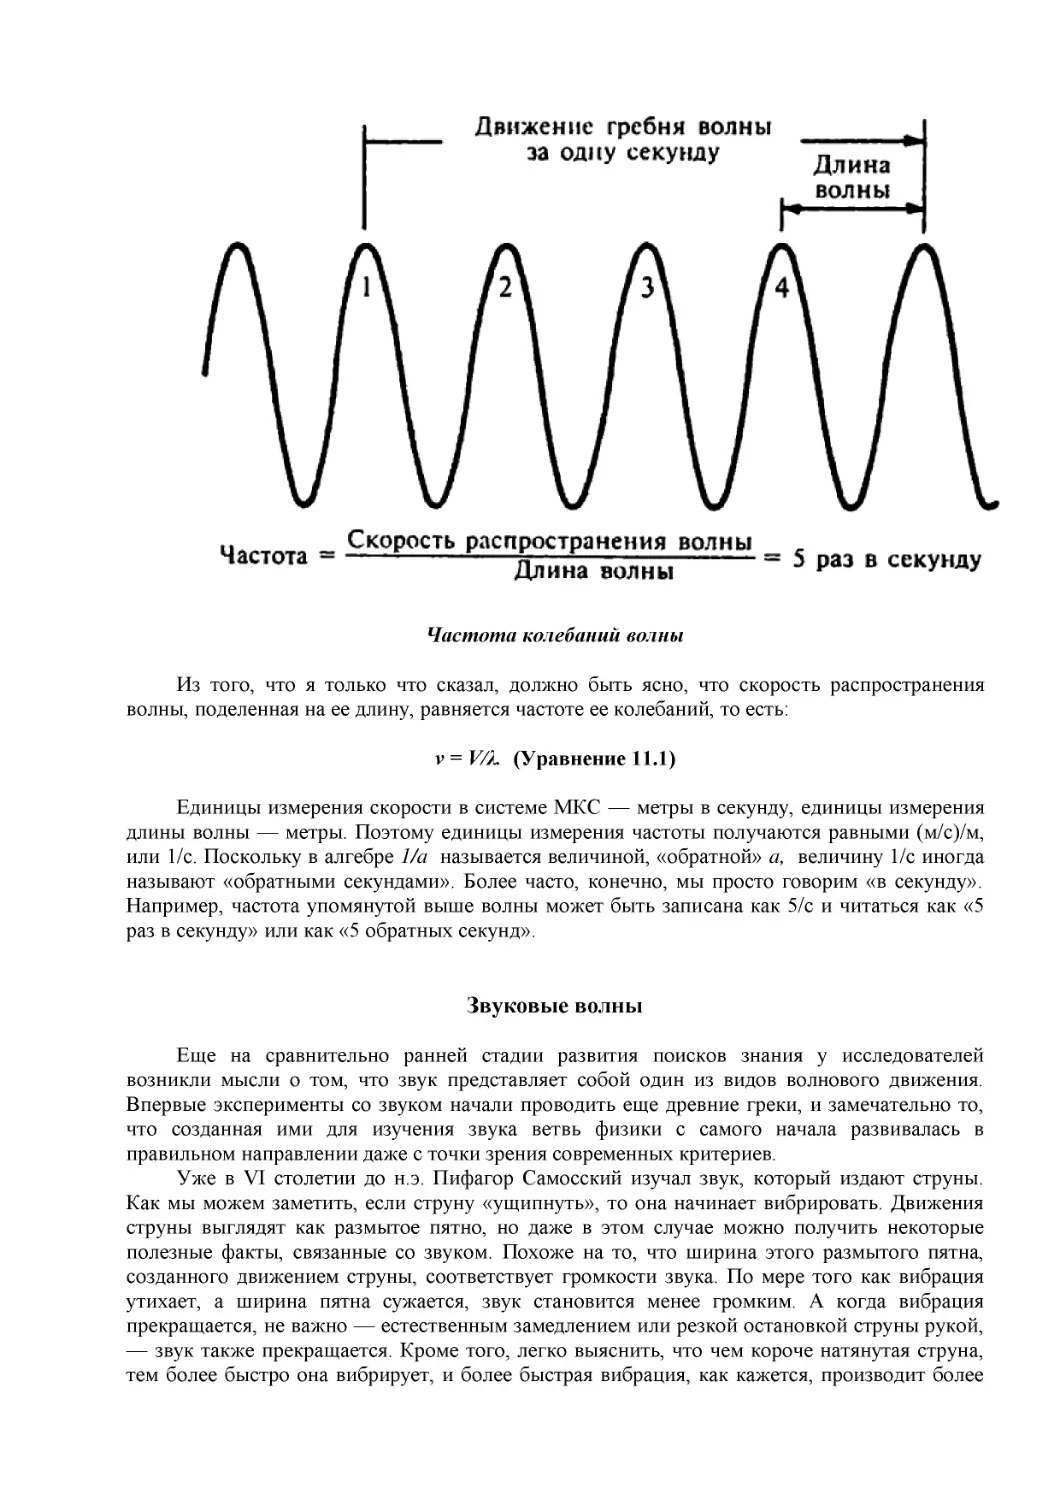 Частота колебаний волны
ν = V/λ.  (Уравнение 11.1)
Звуковые волны